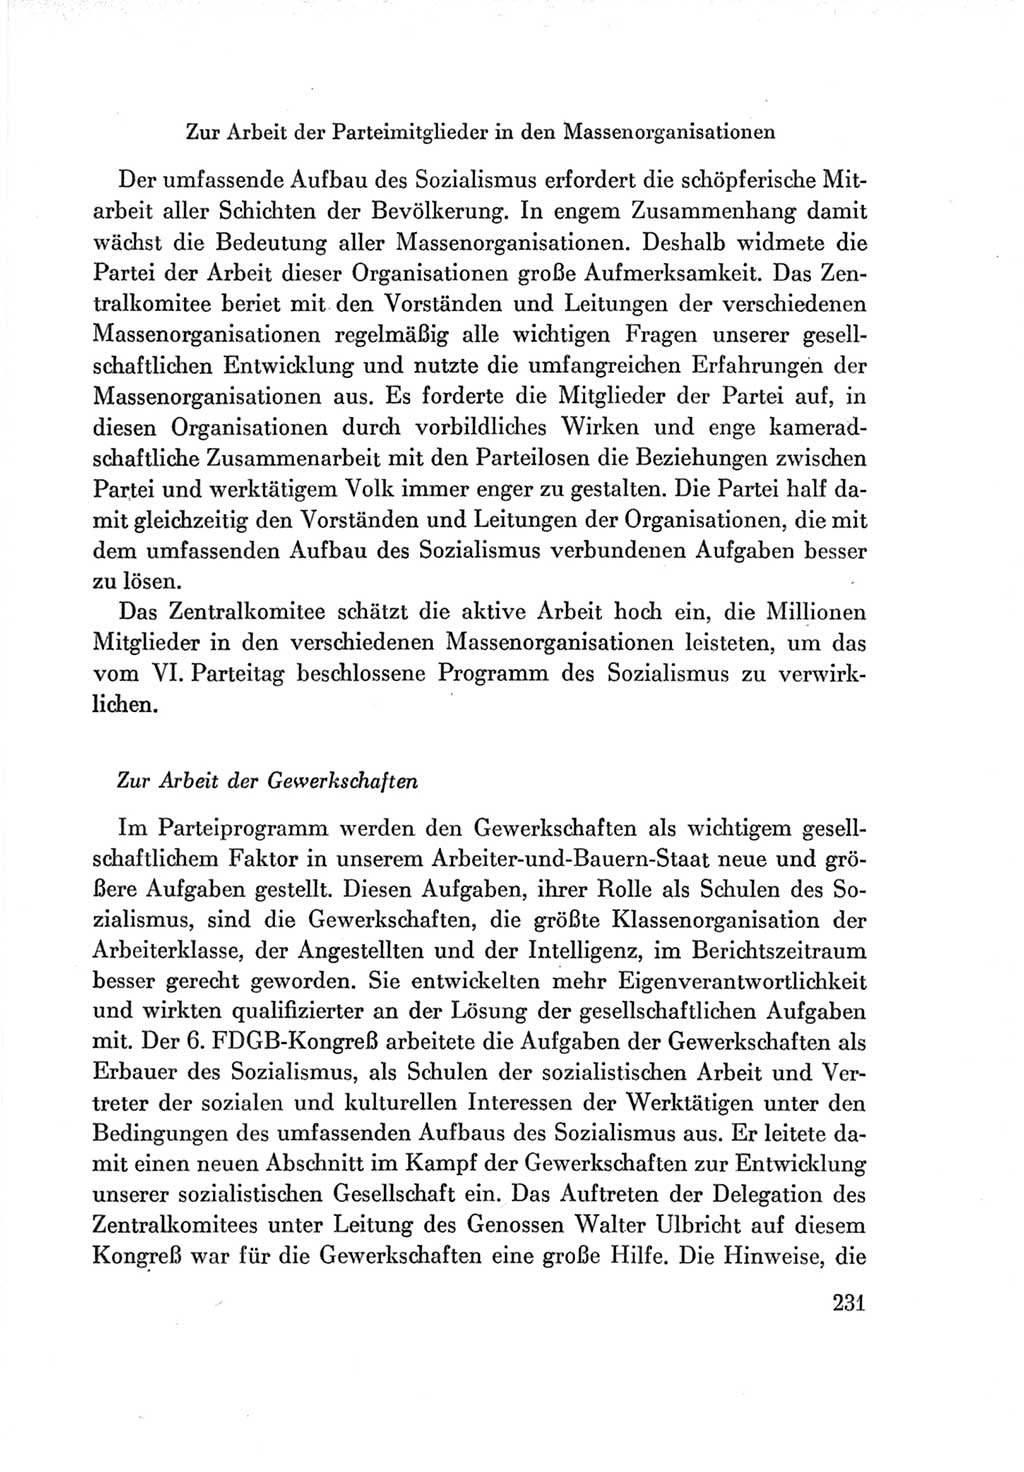 Protokoll der Verhandlungen des Ⅶ. Parteitages der Sozialistischen Einheitspartei Deutschlands (SED) [Deutsche Demokratische Republik (DDR)] 1967, Band Ⅳ, Seite 231 (Prot. Verh. Ⅶ. PT SED DDR 1967, Bd. Ⅳ, S. 231)